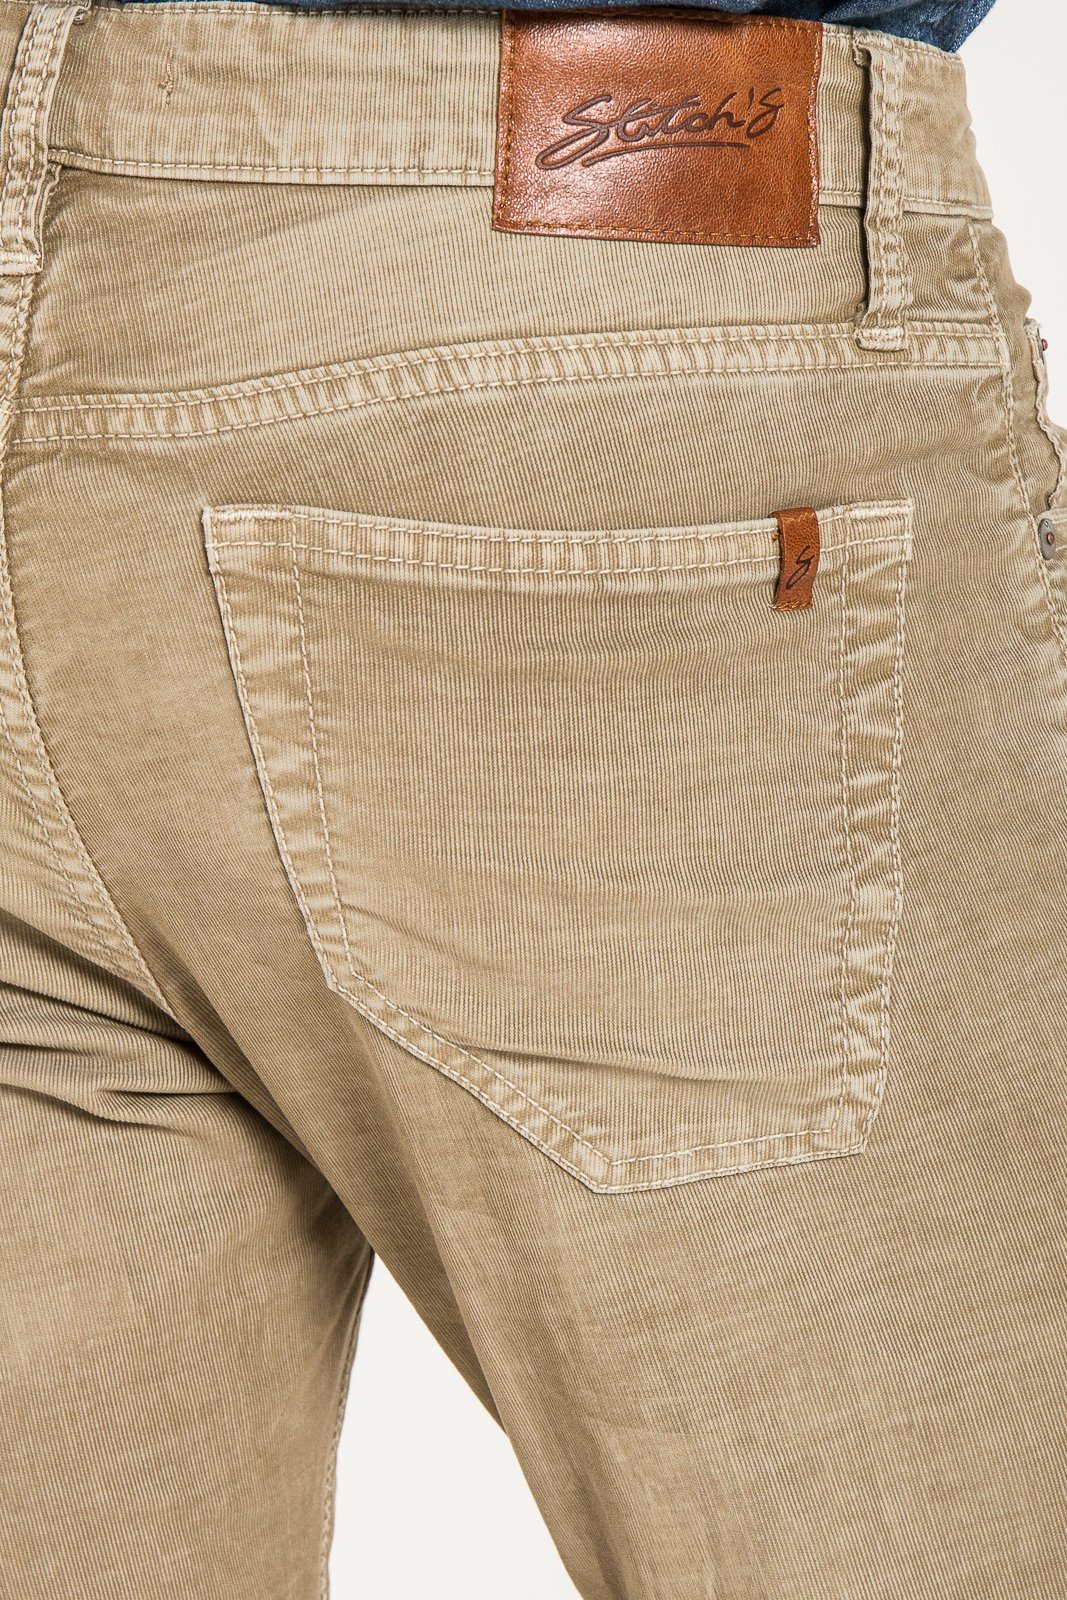 BARFLY SLIM IN MERINO CORDUROY JEANS | STITCHS JEANS – Stitch\'s Jeans